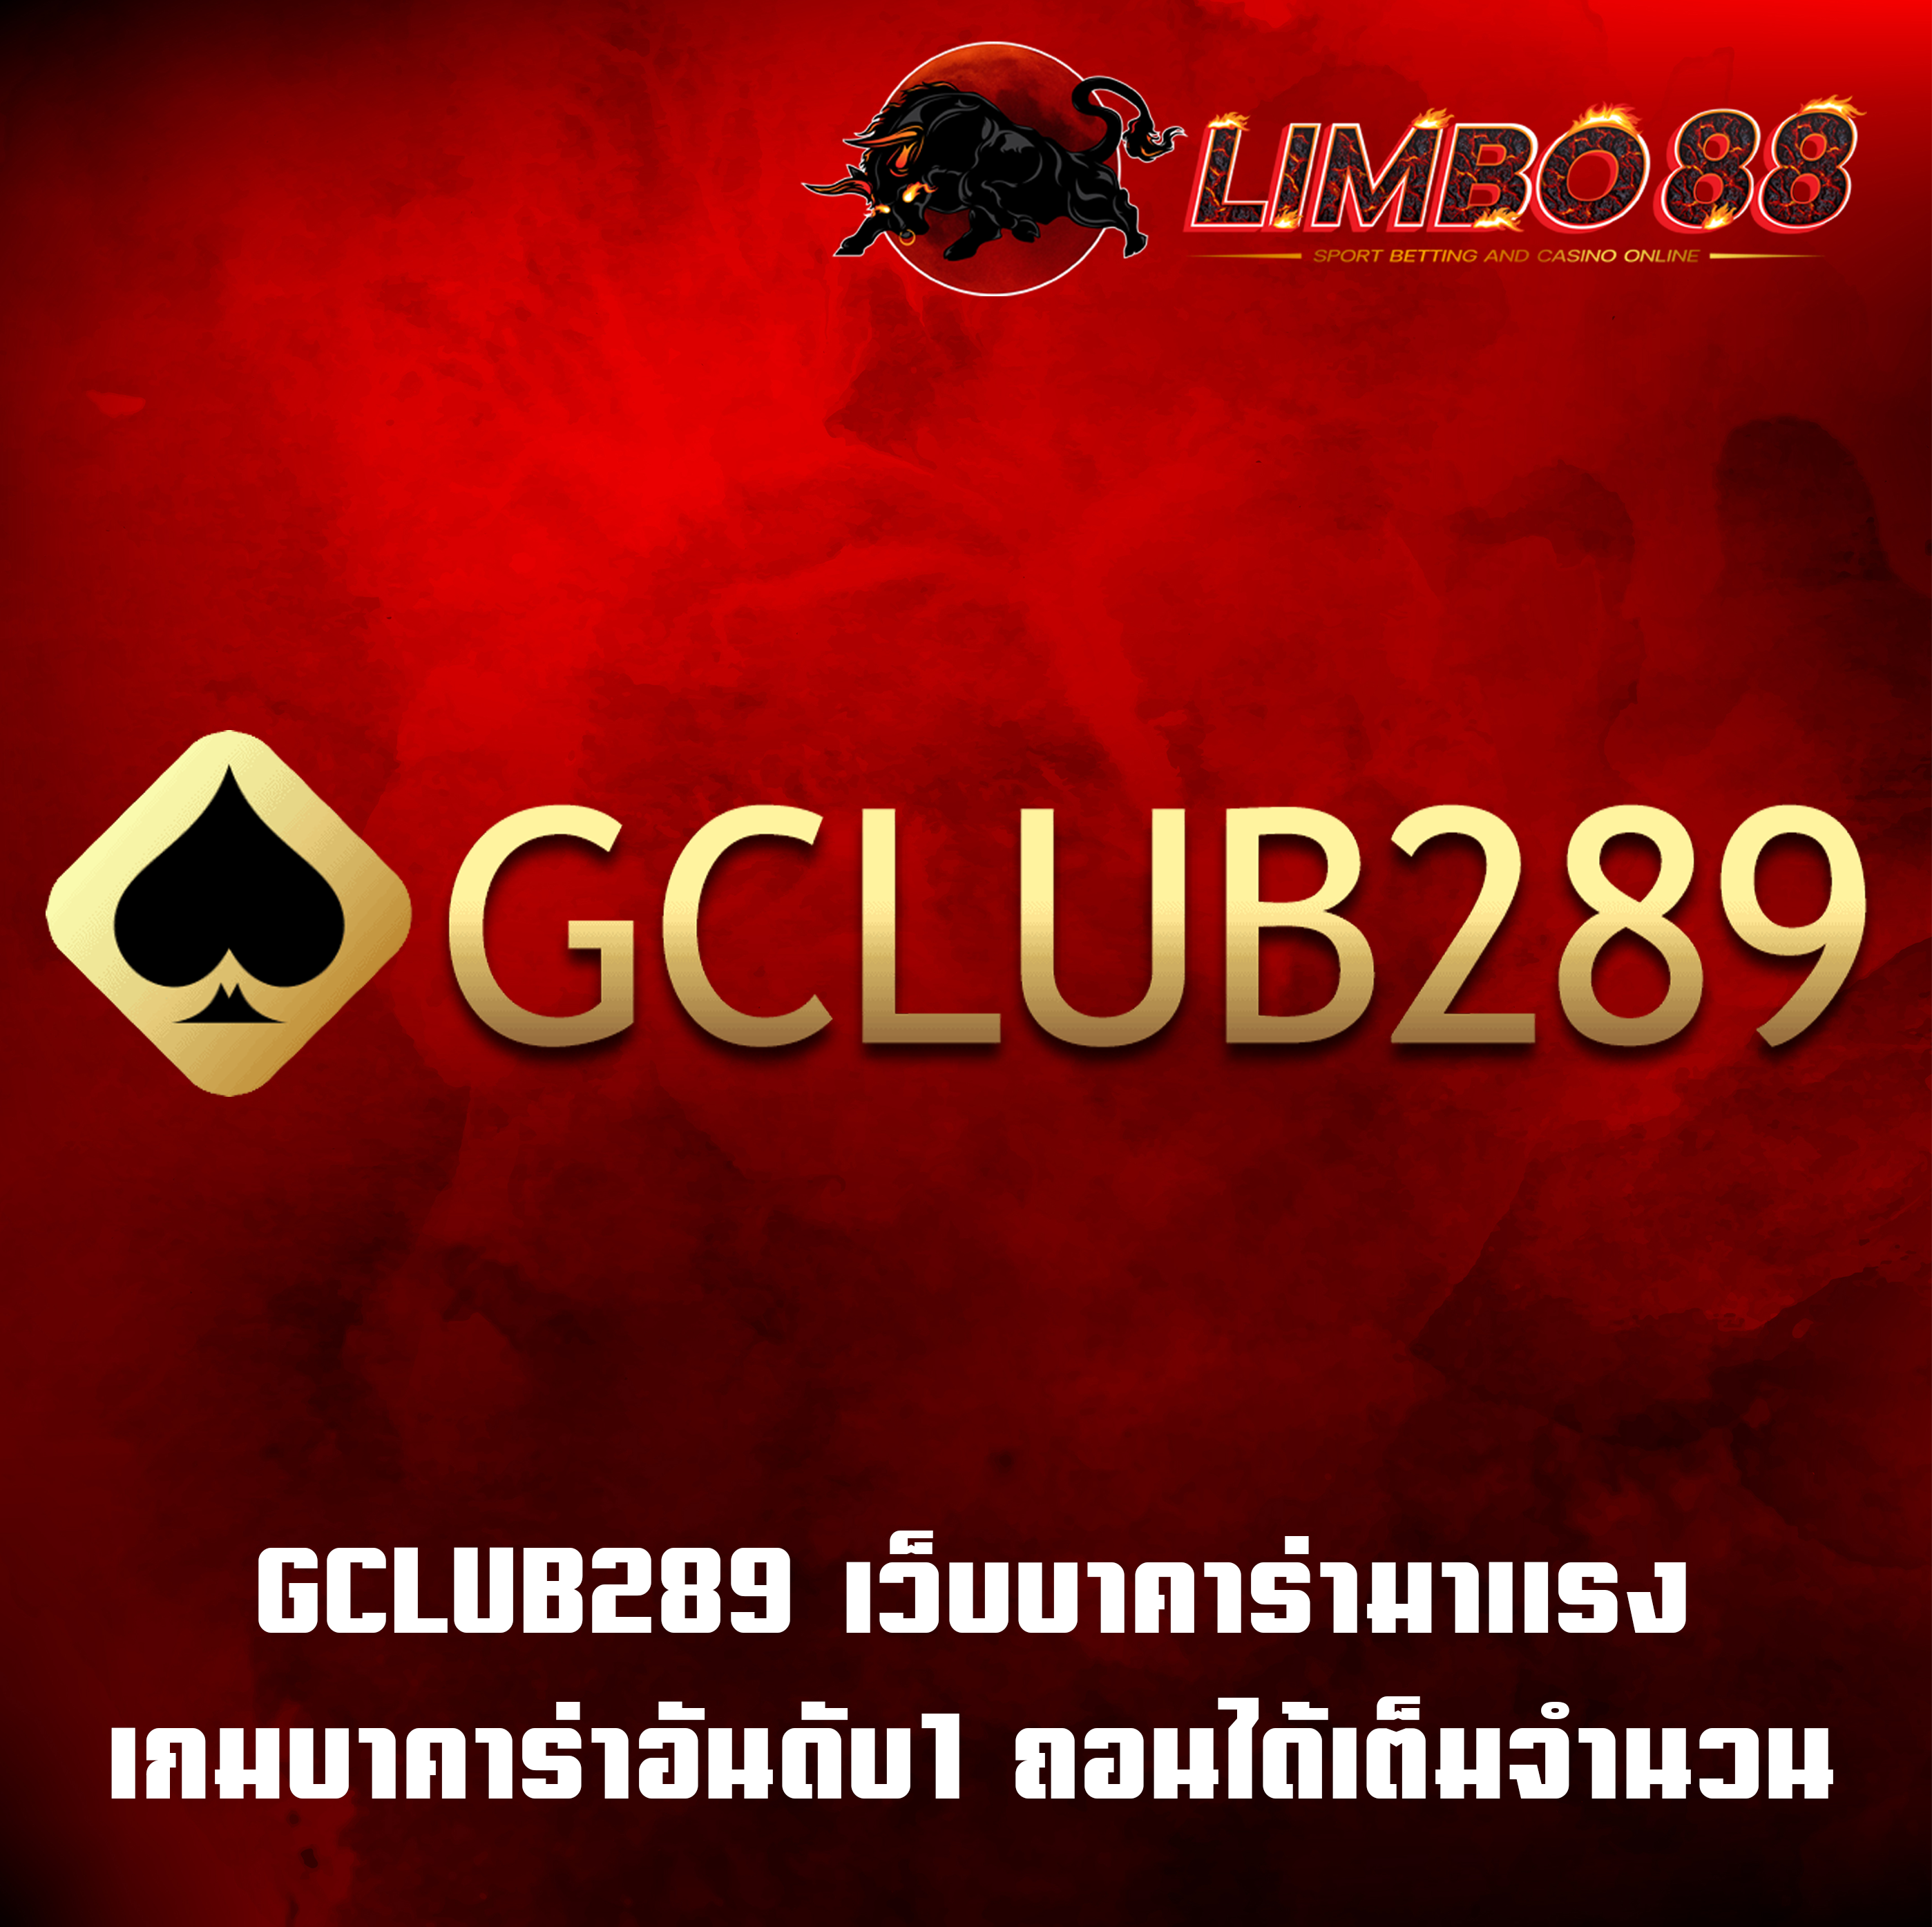 GCLUB289 เว็บบาคาร่ามาแรง เกมบาคาร่าอันดับ1 ถอนได้เต็มจำนวน